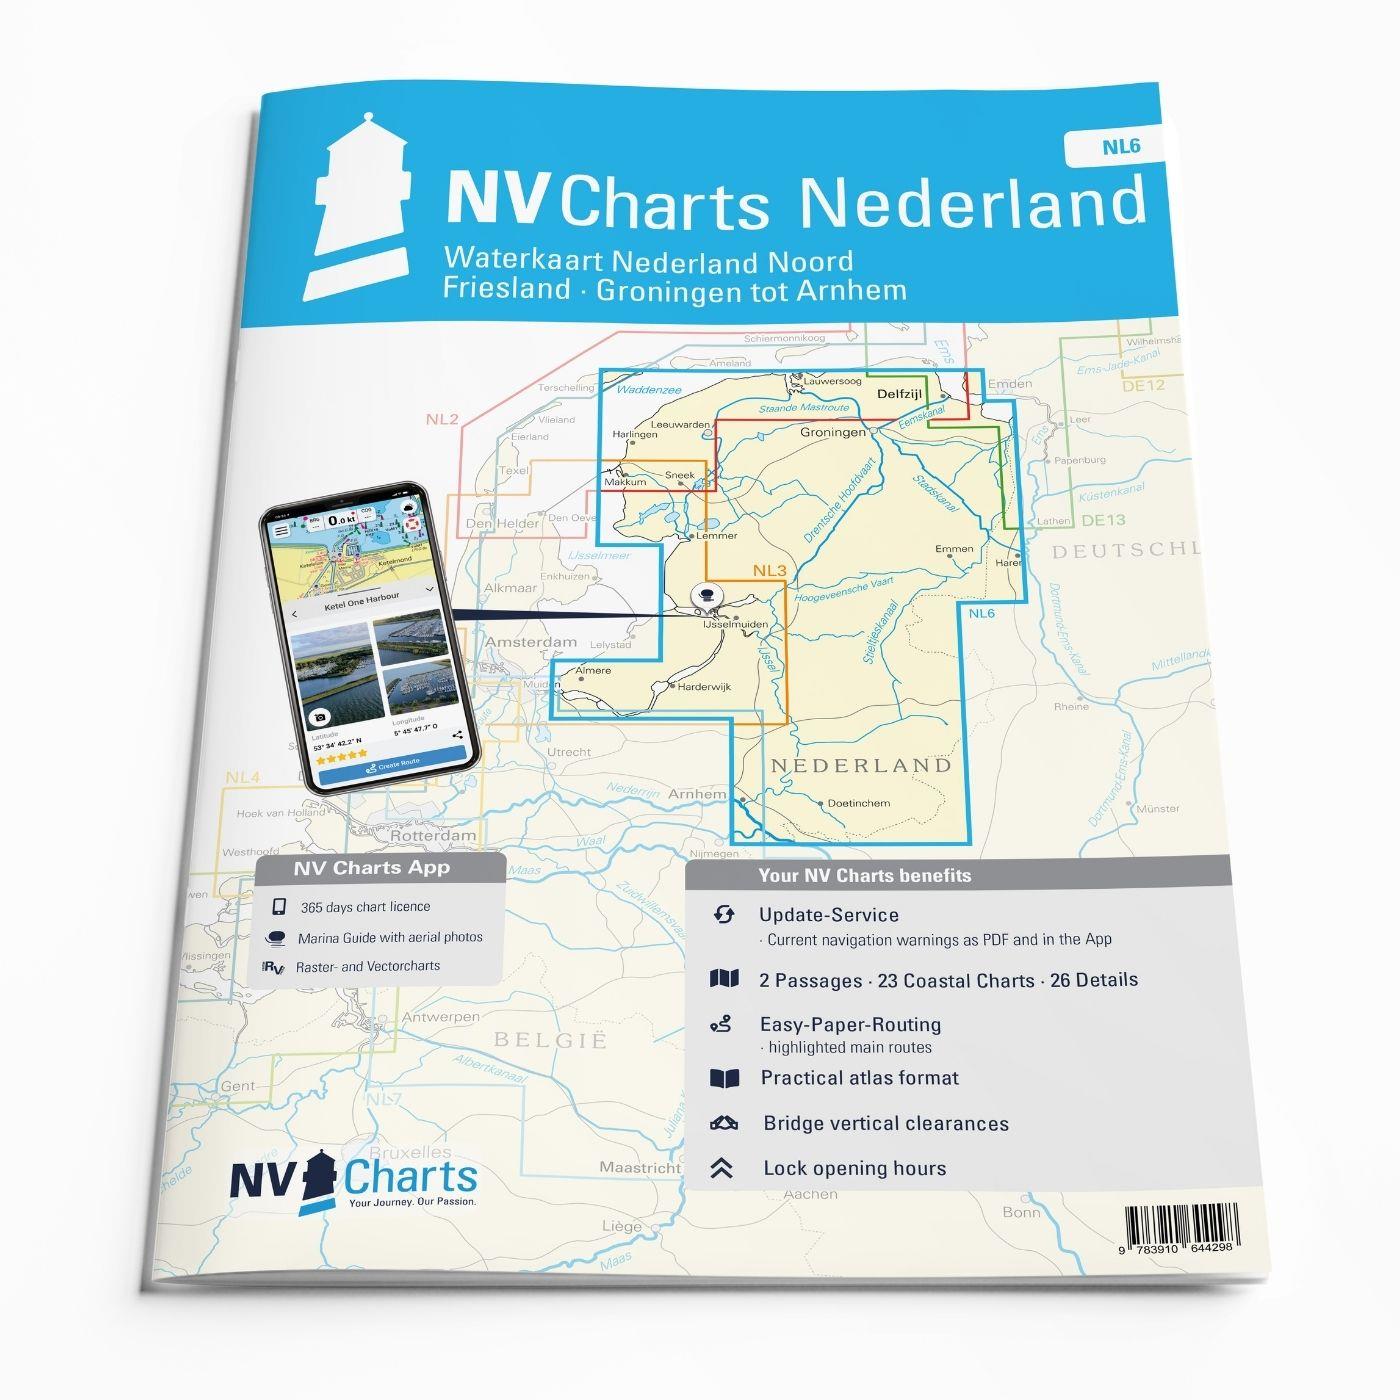 NV Charts Nederland NL6 - Waterkaart Nederland Noord - Friesland - Groningen tot Arnhem